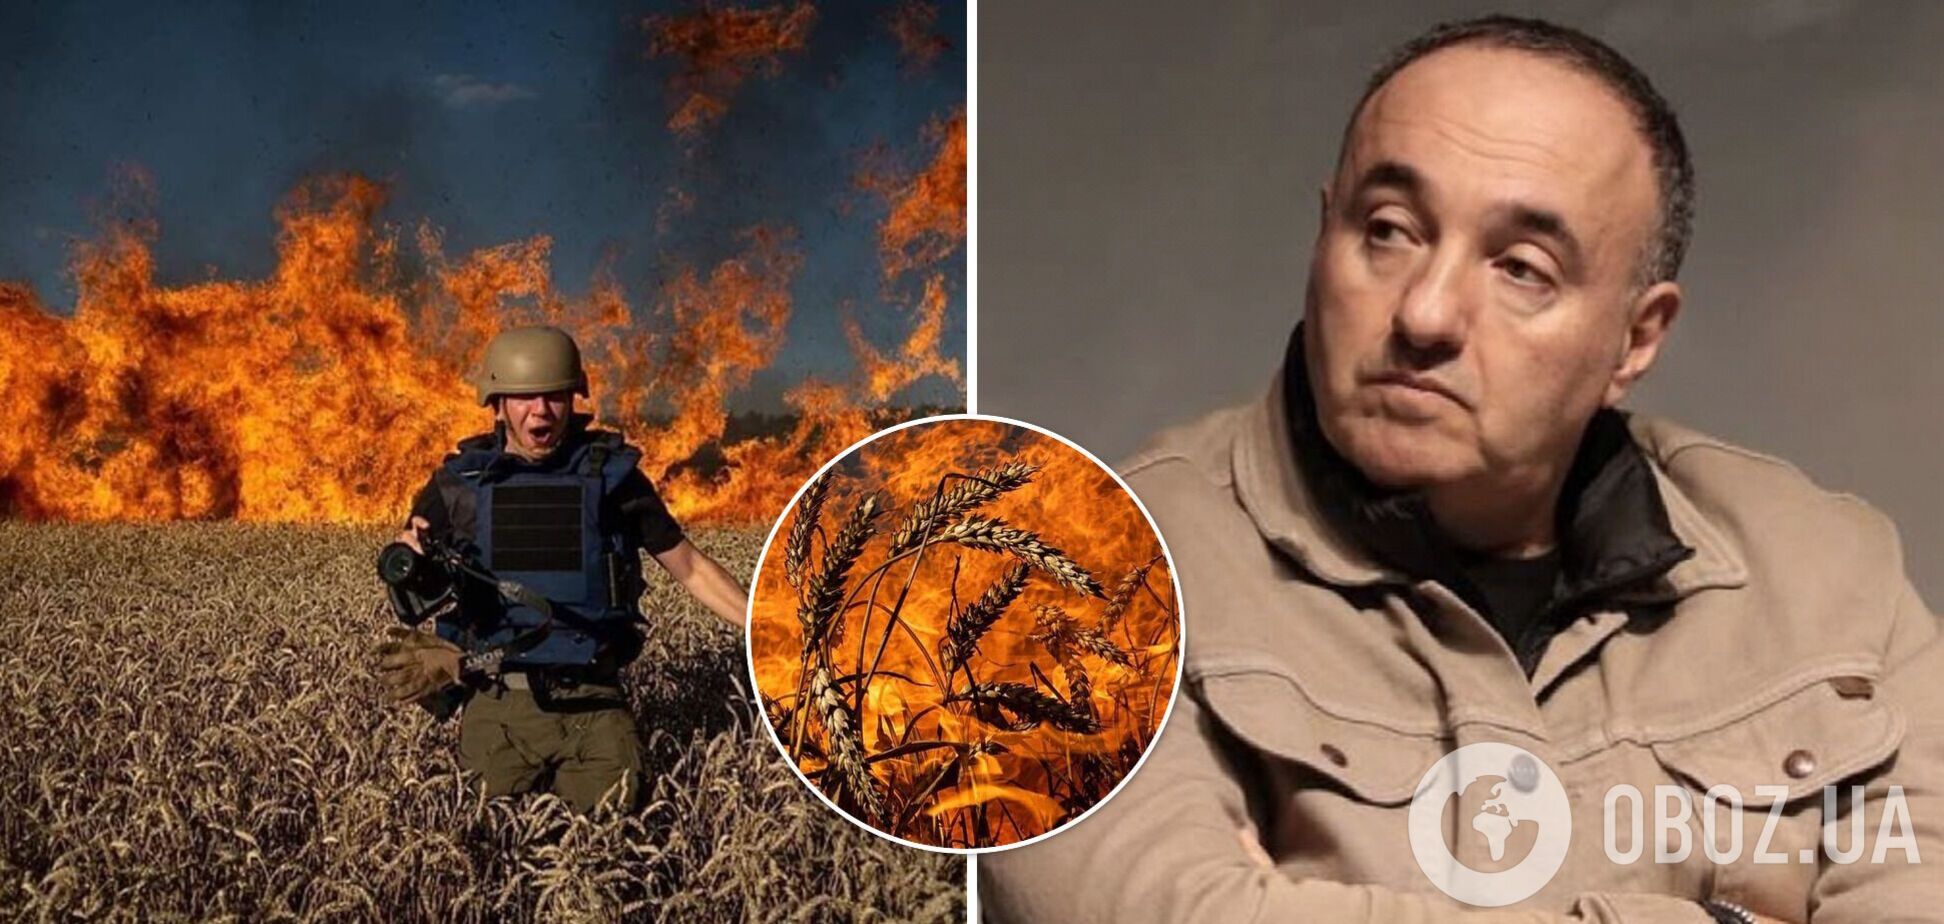 Пожар может охватить всю планету. Роднянский доступно объяснил, почему войну в Украине нужно срочно остановить